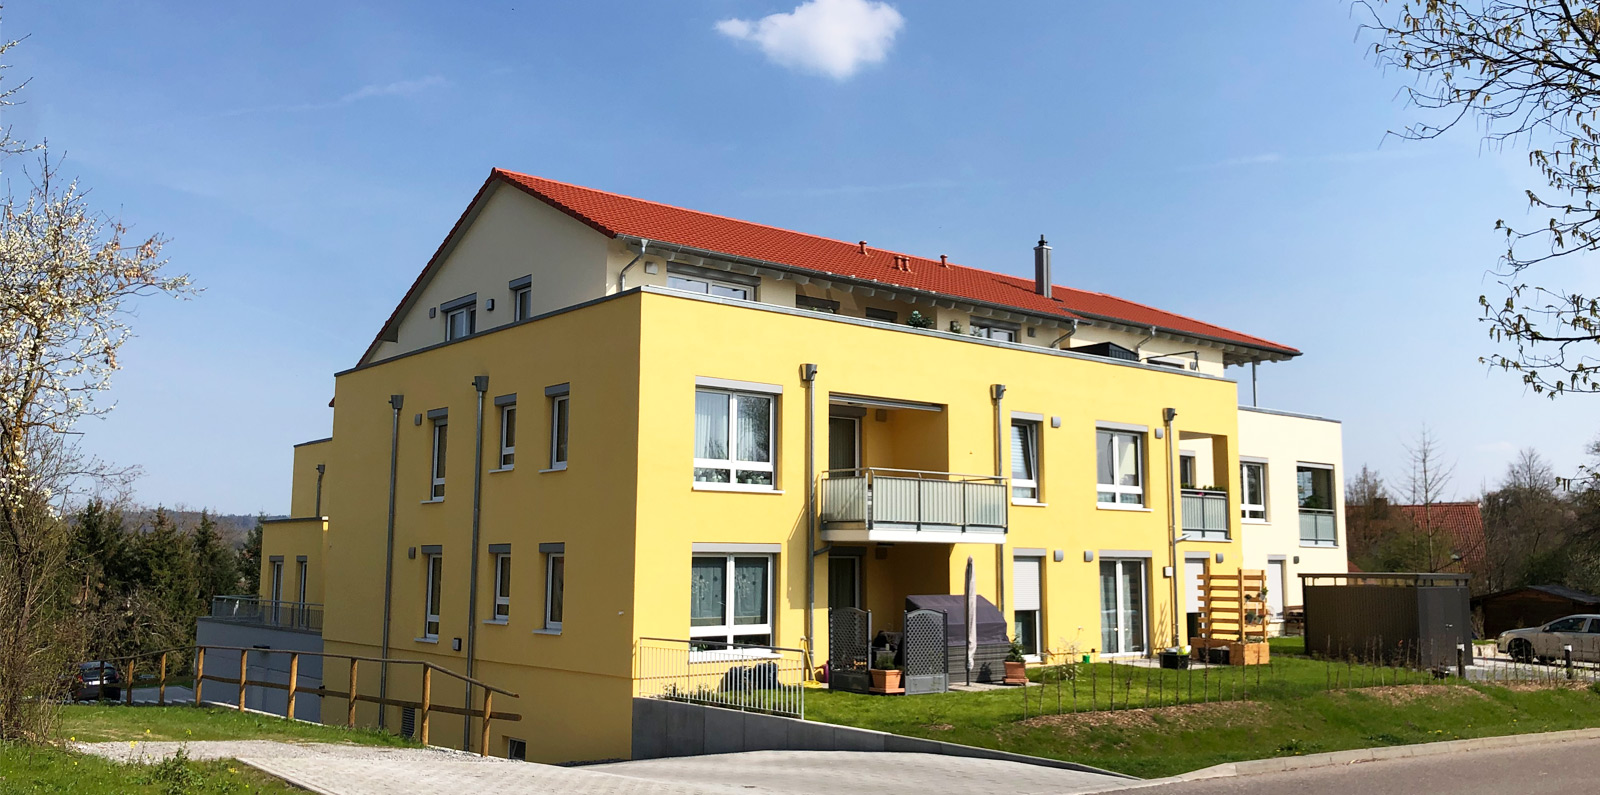 Vellberg, Bucher Straße 14 - Röwisch Wohnbau Immobilien ...